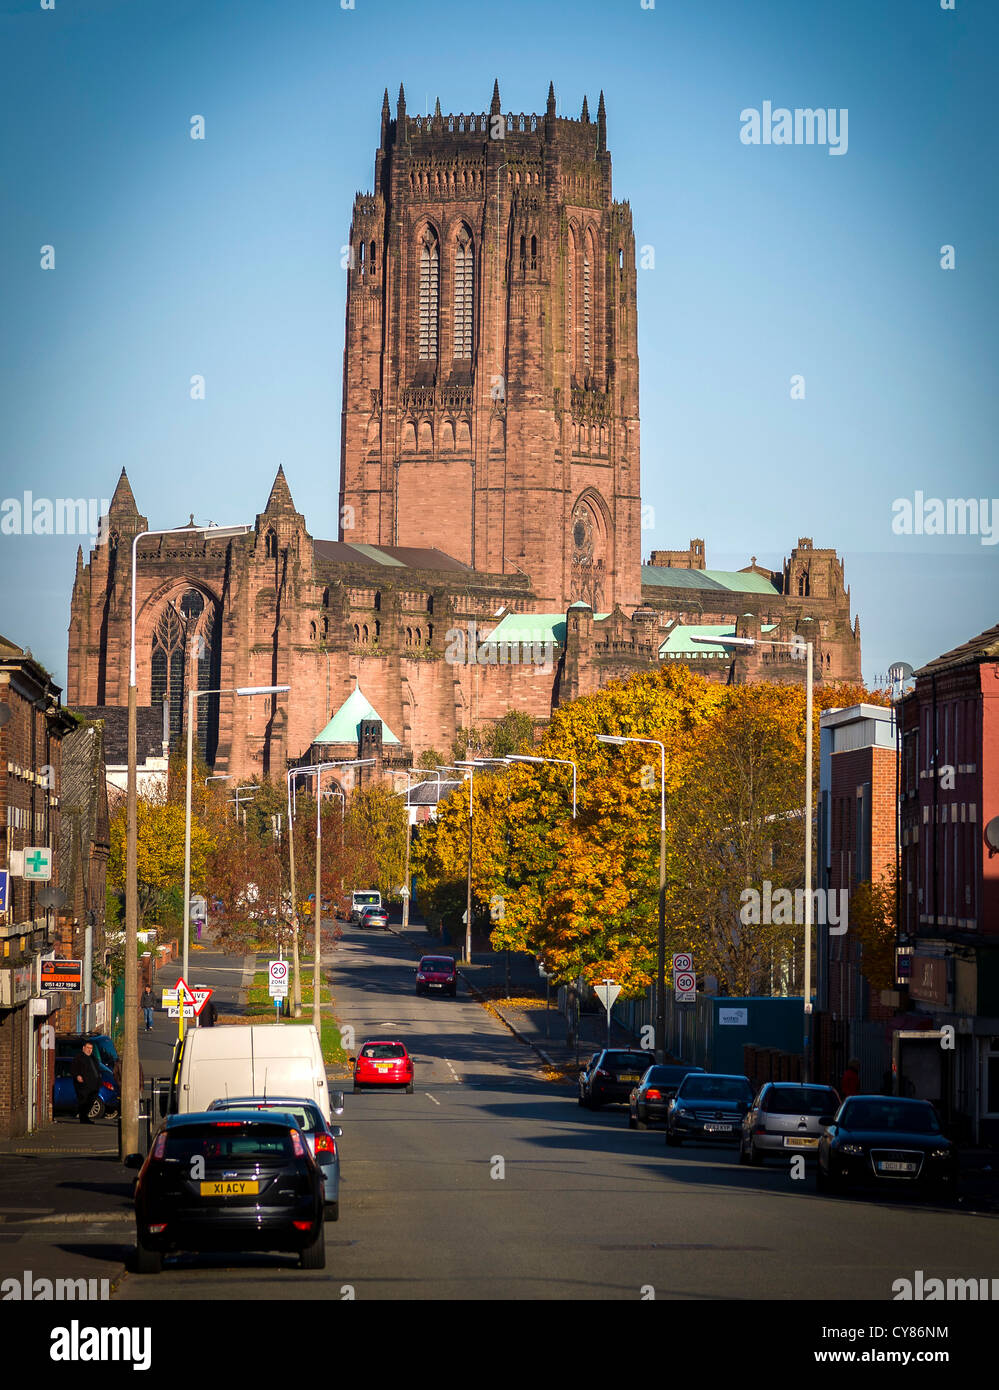 Liverpool cathédrale anglicane de Saint James. Banque D'Images